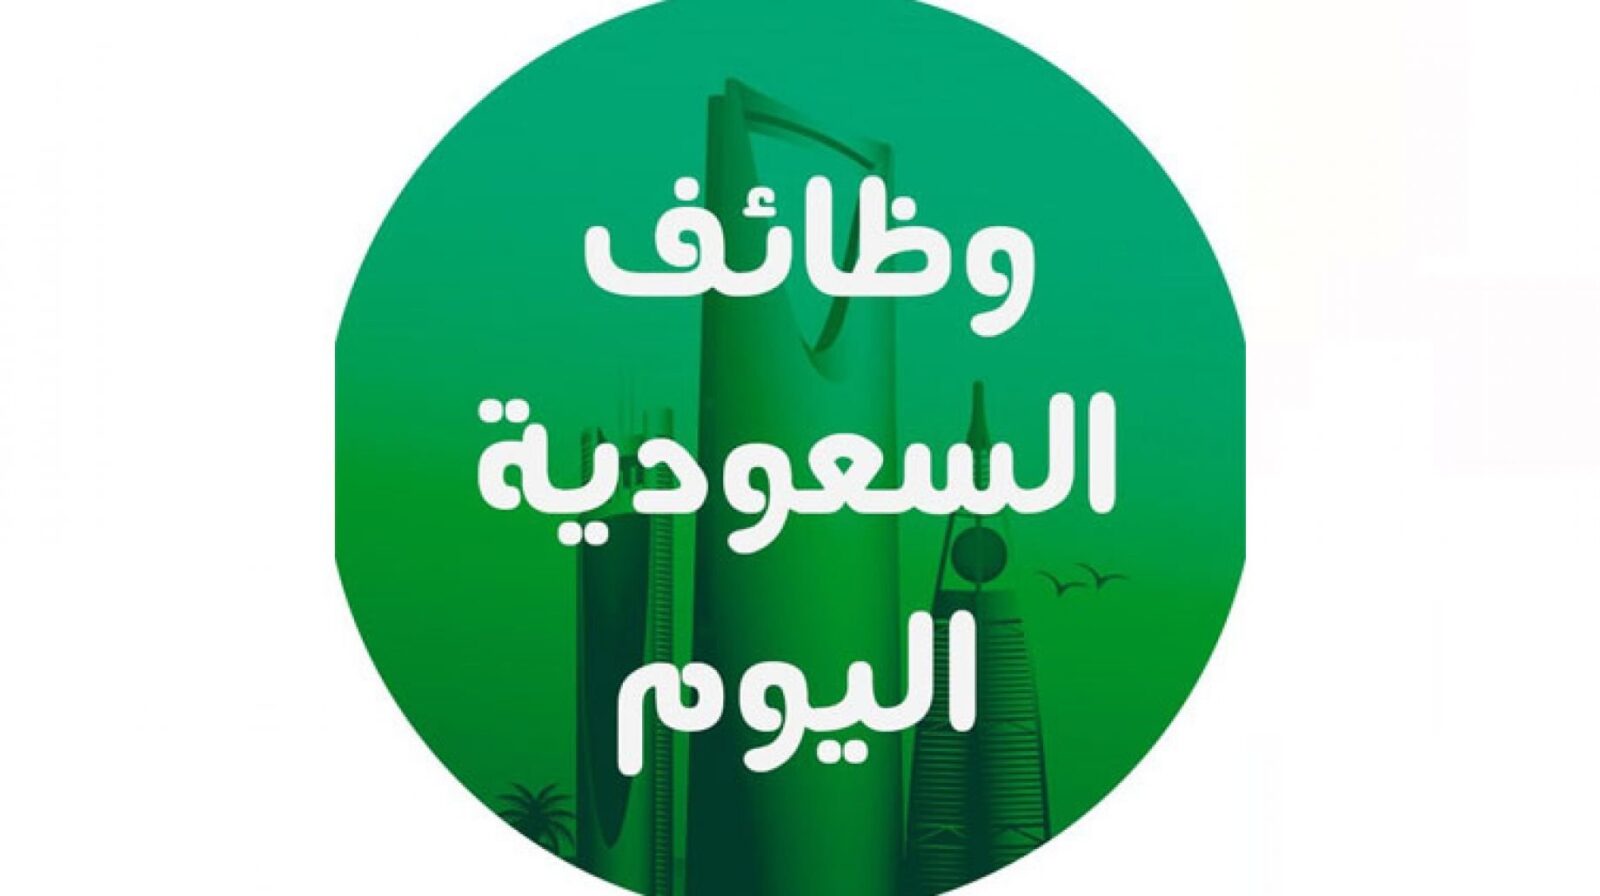 jobstodaynoor - وظائف معلمات رياض اطفال السعودية وتعليم اساسي ومتوسط وثانوي جميع التخصصات مدارس وروضات